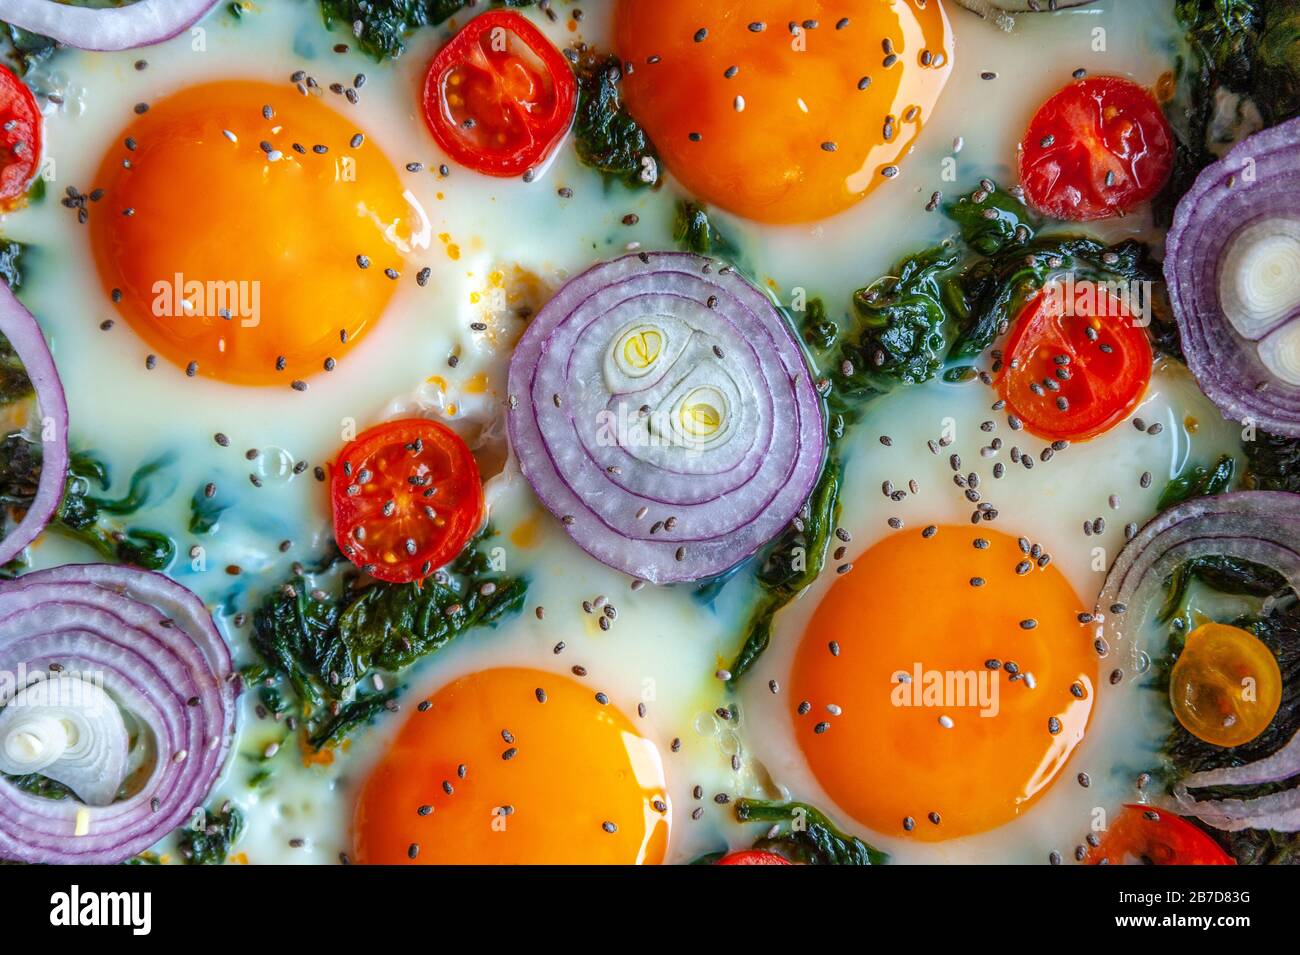 Détail d'une omelette aux épinards dans une poêle et décorée avec de l'oignon frais, des tomates et des épinards Banque D'Images